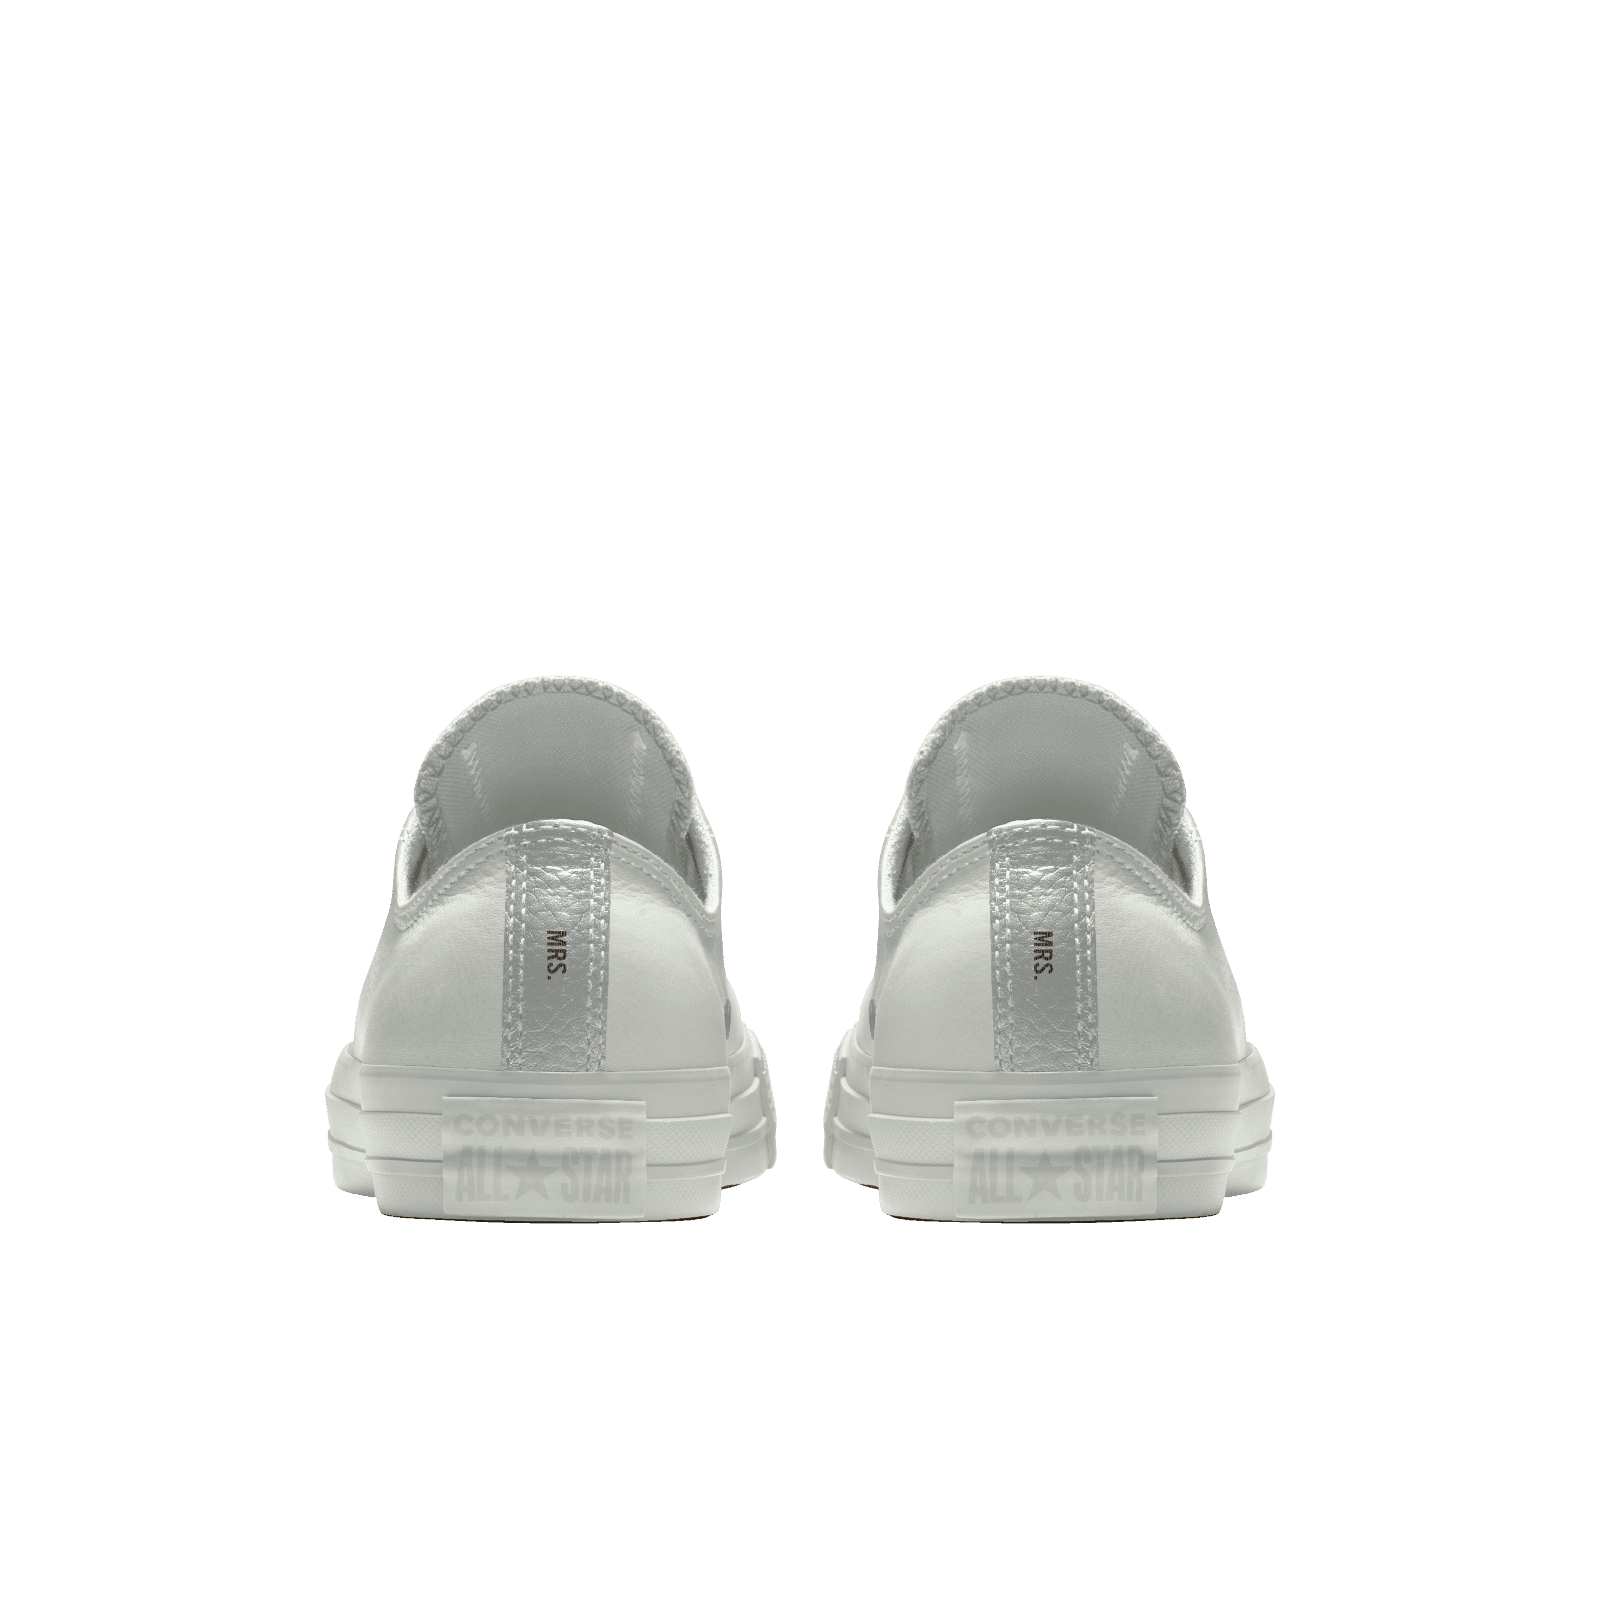 custom wedding converse sneakers